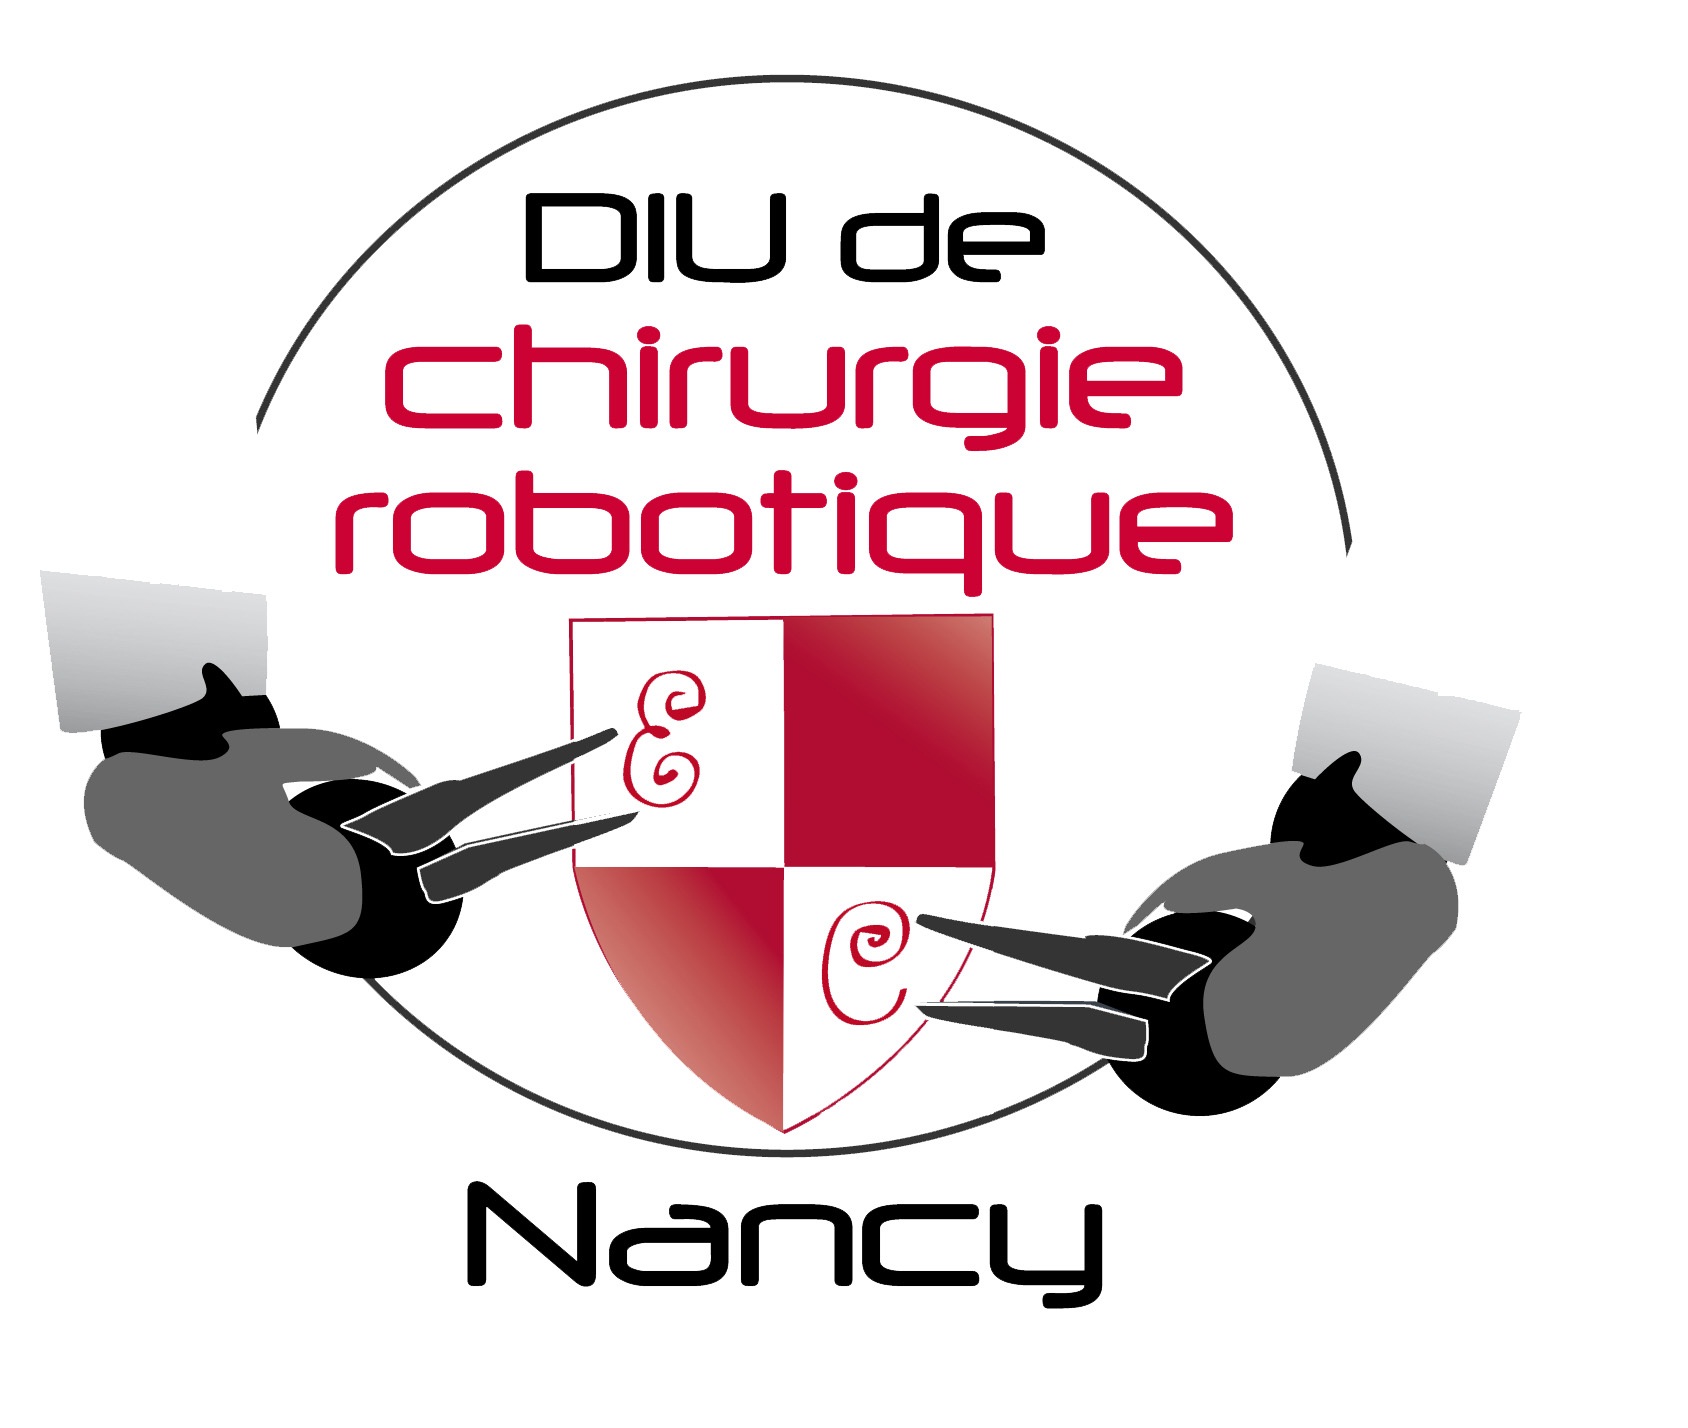 DIU de chirurgie robotique Nancy 2014 : Organisation du bloc opératoire robotique